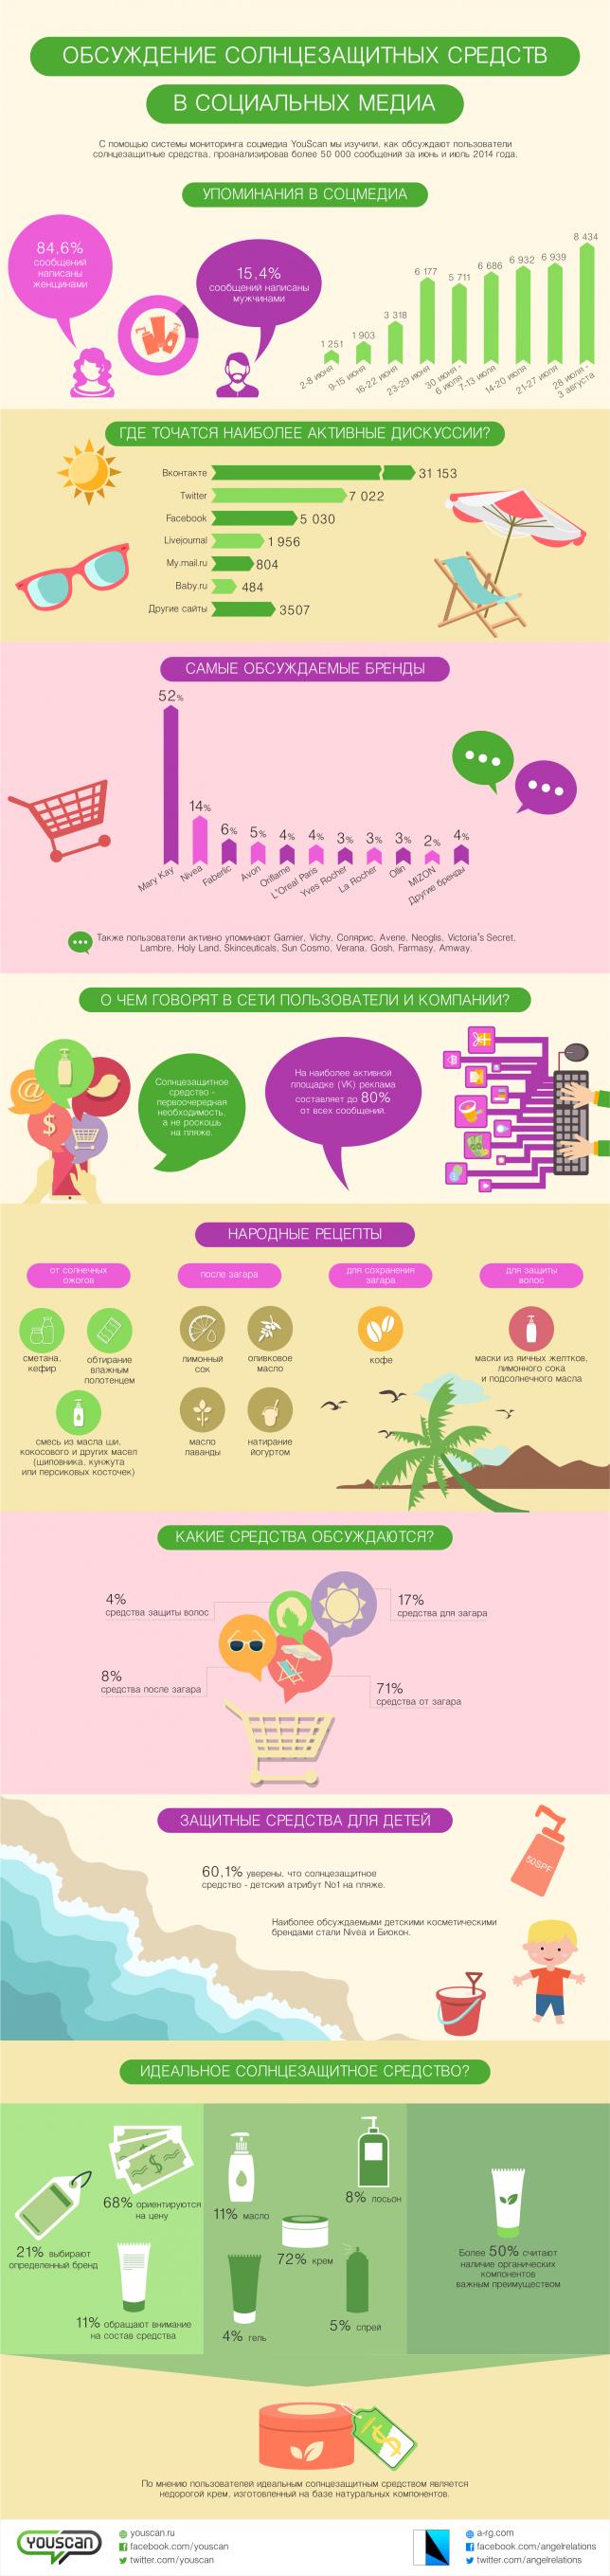 Солнцезащитные средства в соцмедиа: инфографика